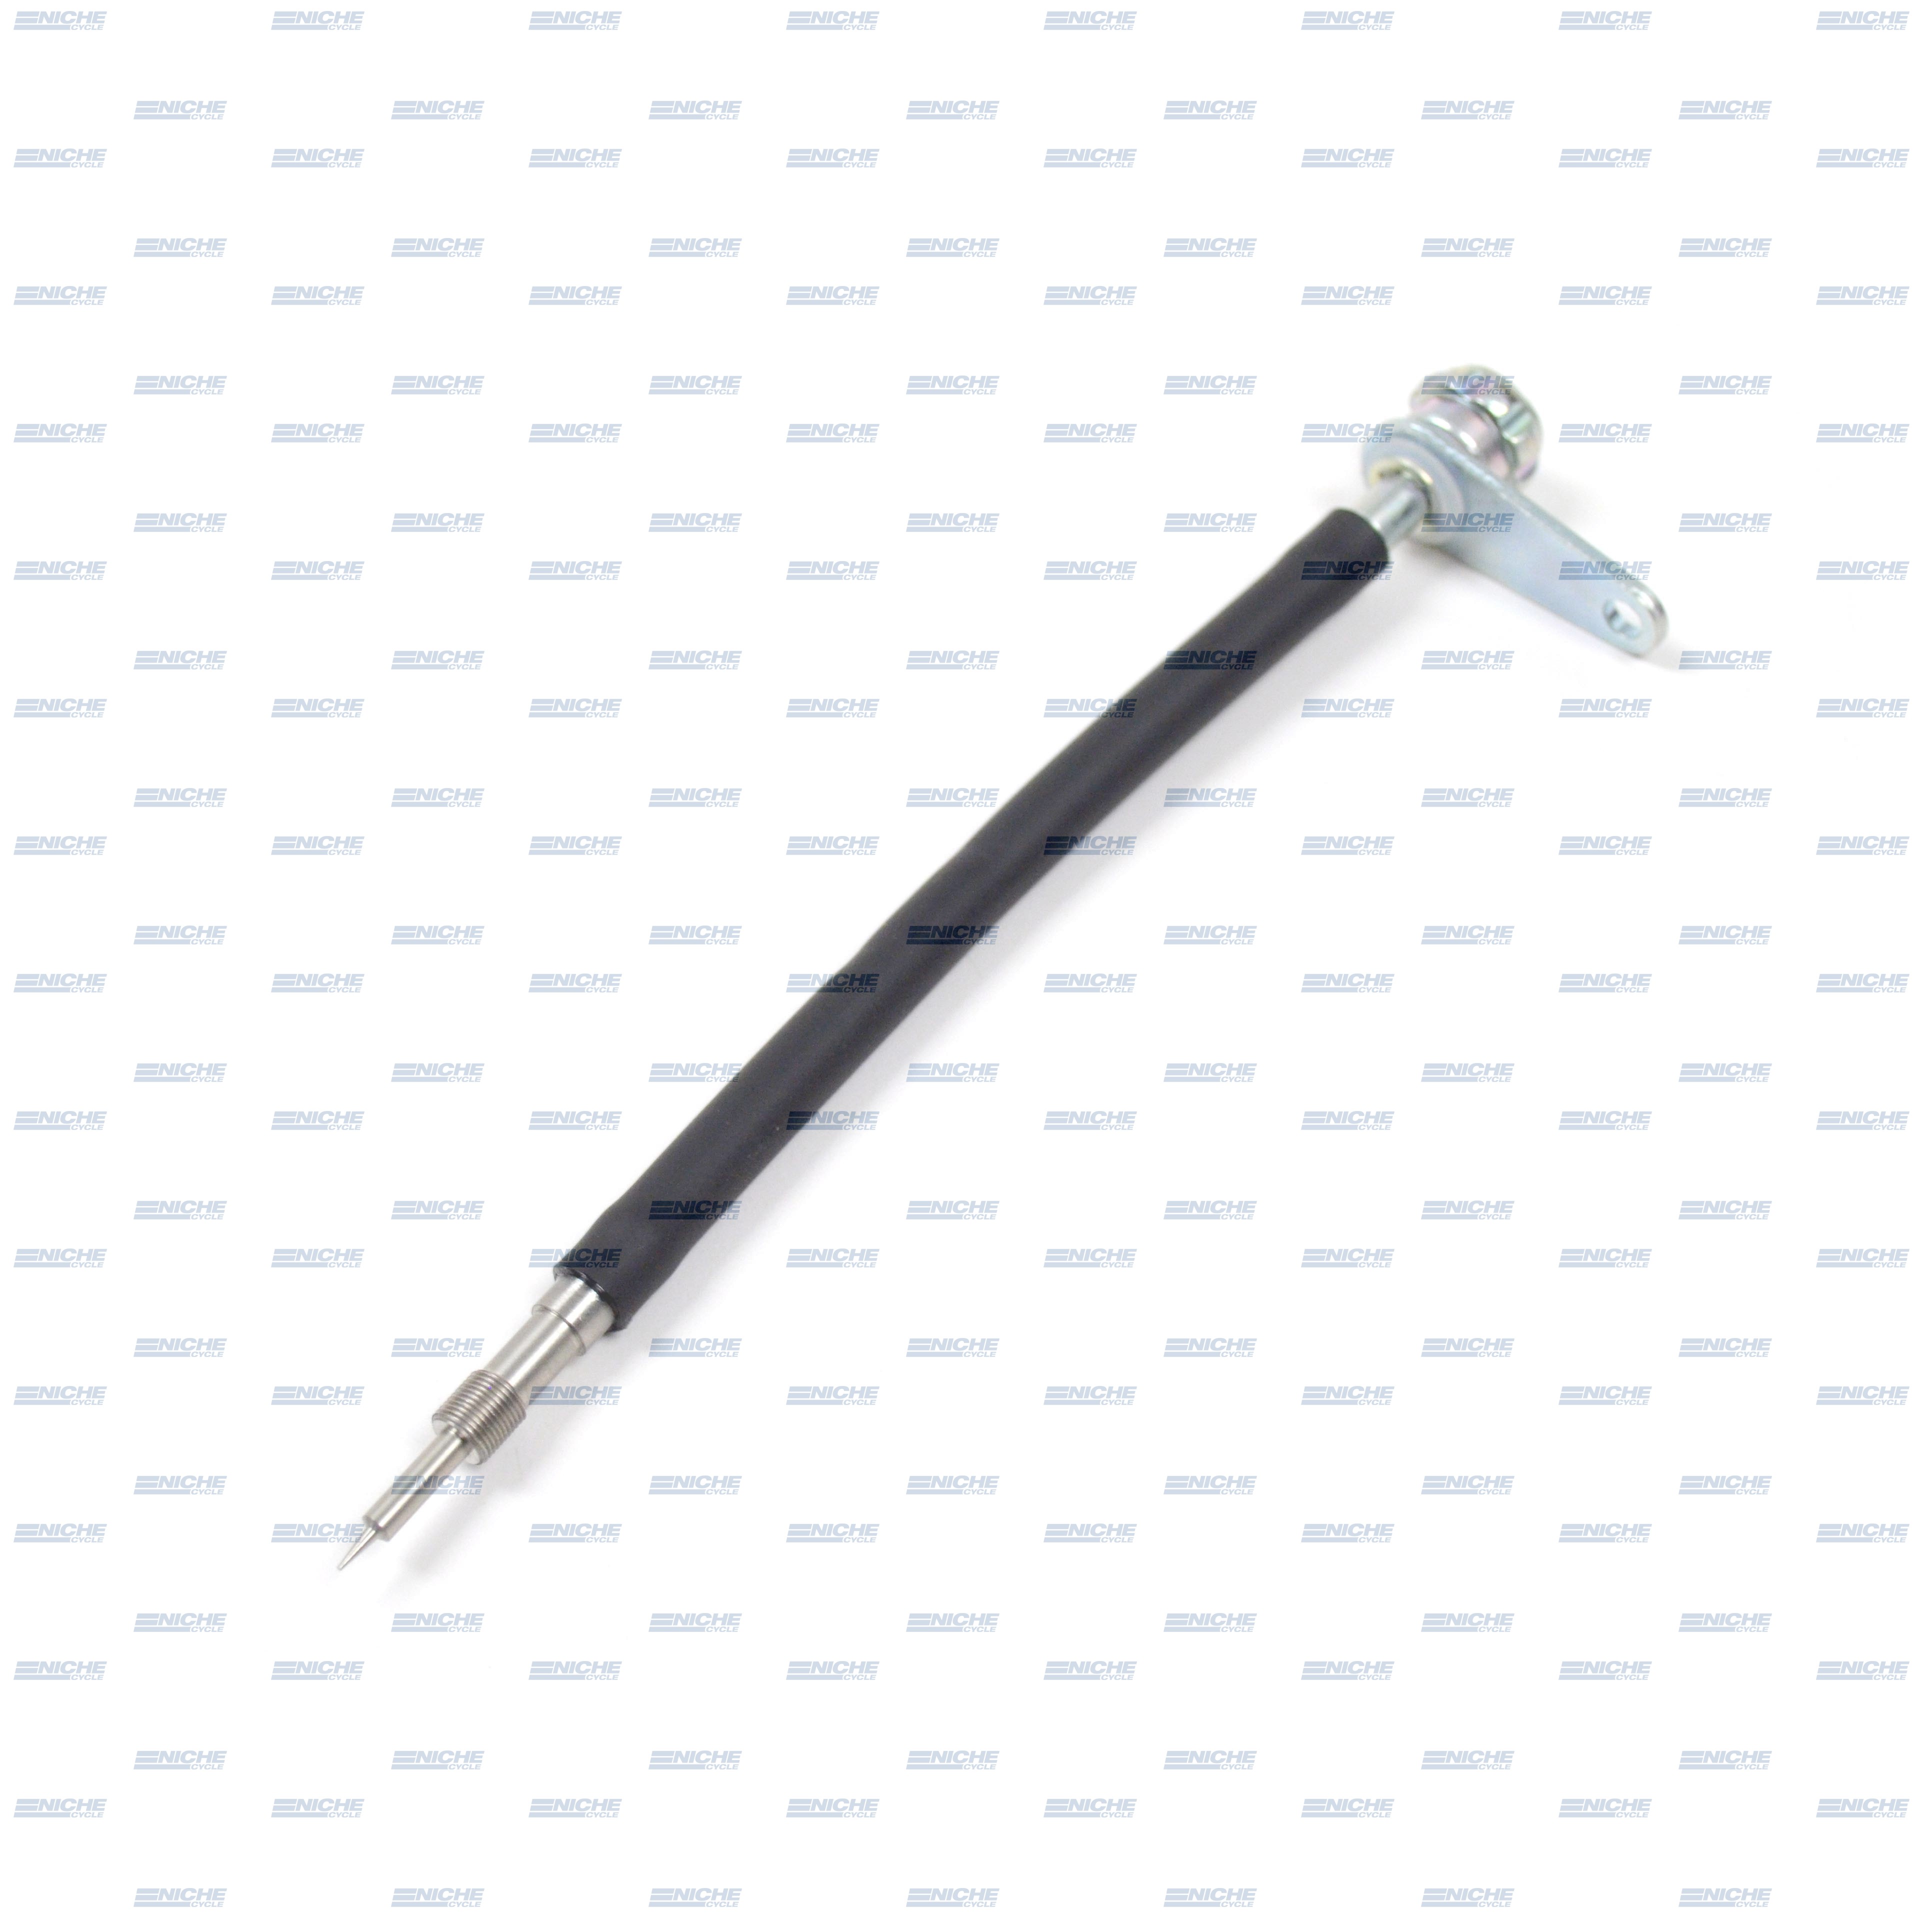 Mikuni Remote Fuel Screw (Pilot Circuit) Adjuster 990-605-074 Genuine  Genuine Mikuni Air & Fuel Screws